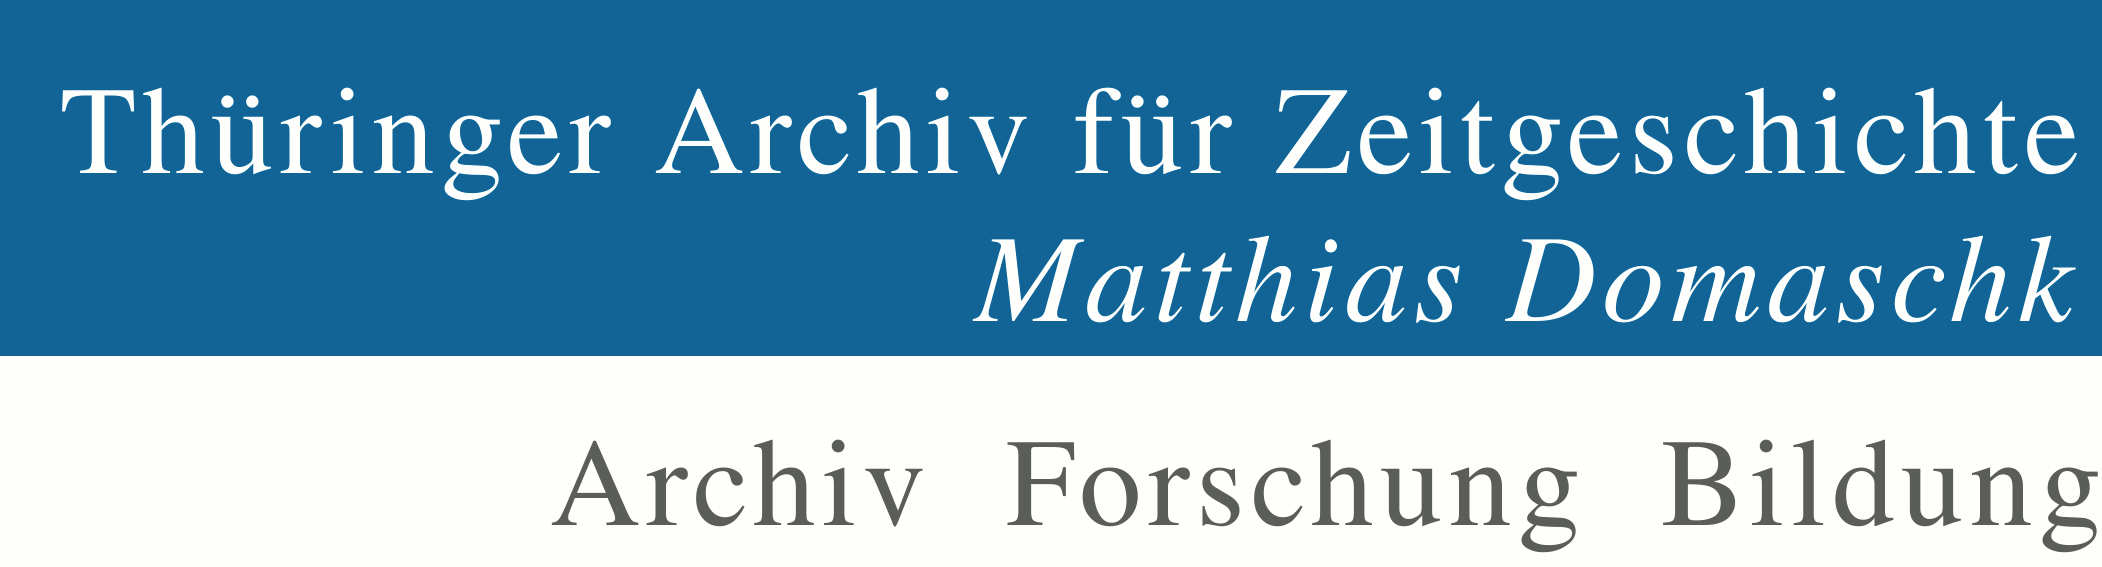 Thüringer Archiv für Zeitgeschichte "Matthias Domaschk" Jena